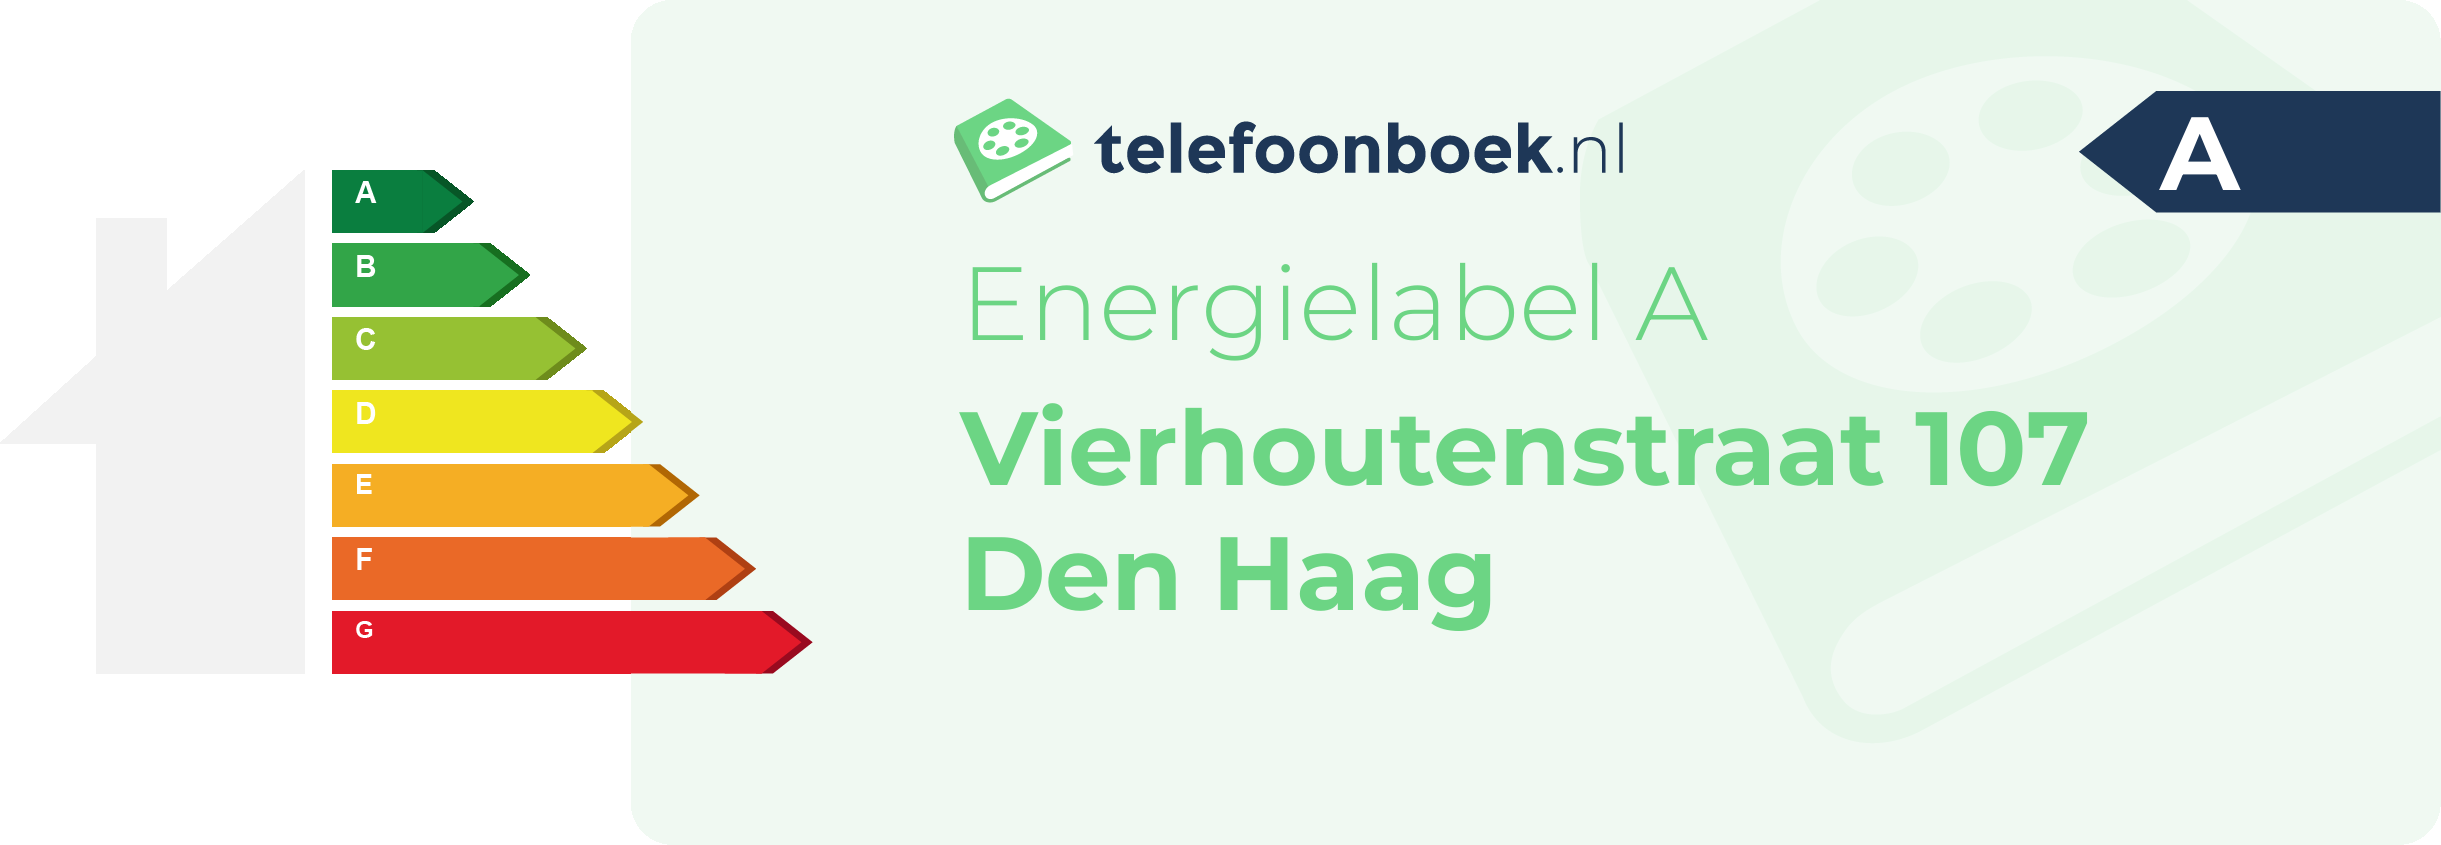 Energielabel Vierhoutenstraat 107 Den Haag